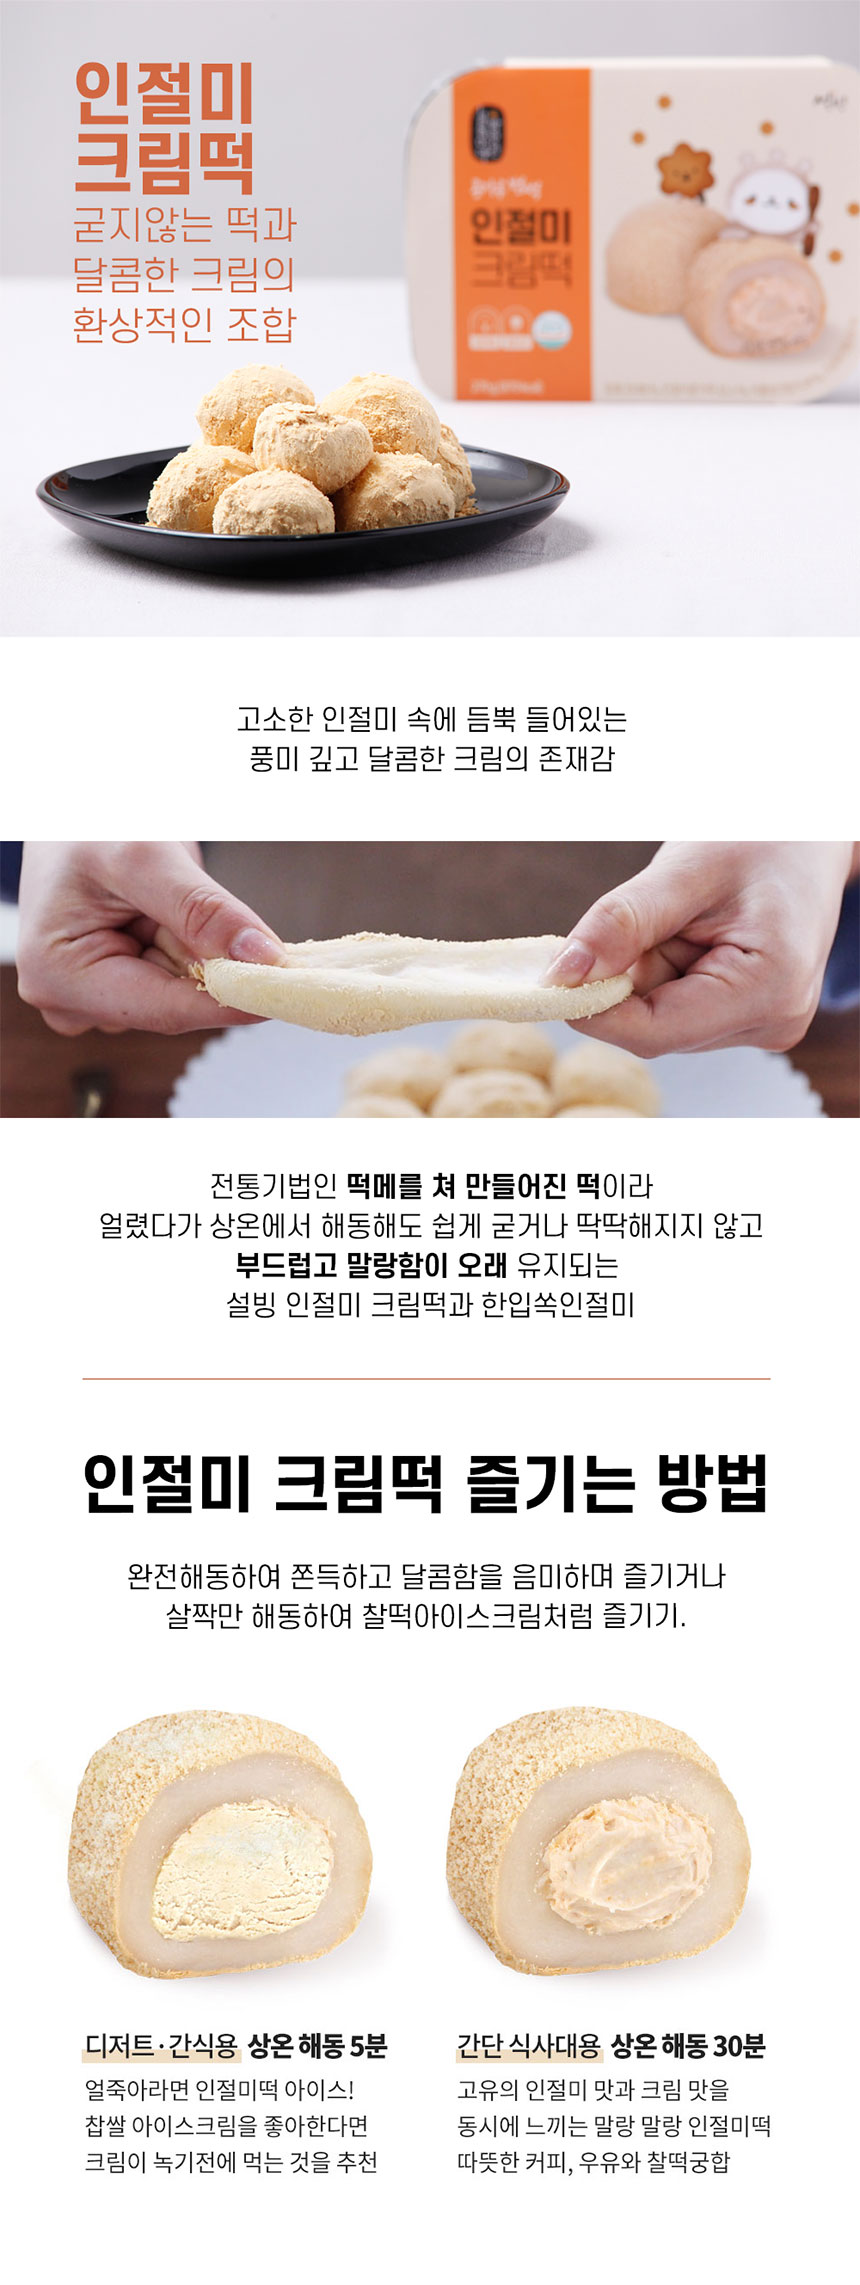 韓國食品-[설빙] 빙수 인절미크림떡 270g